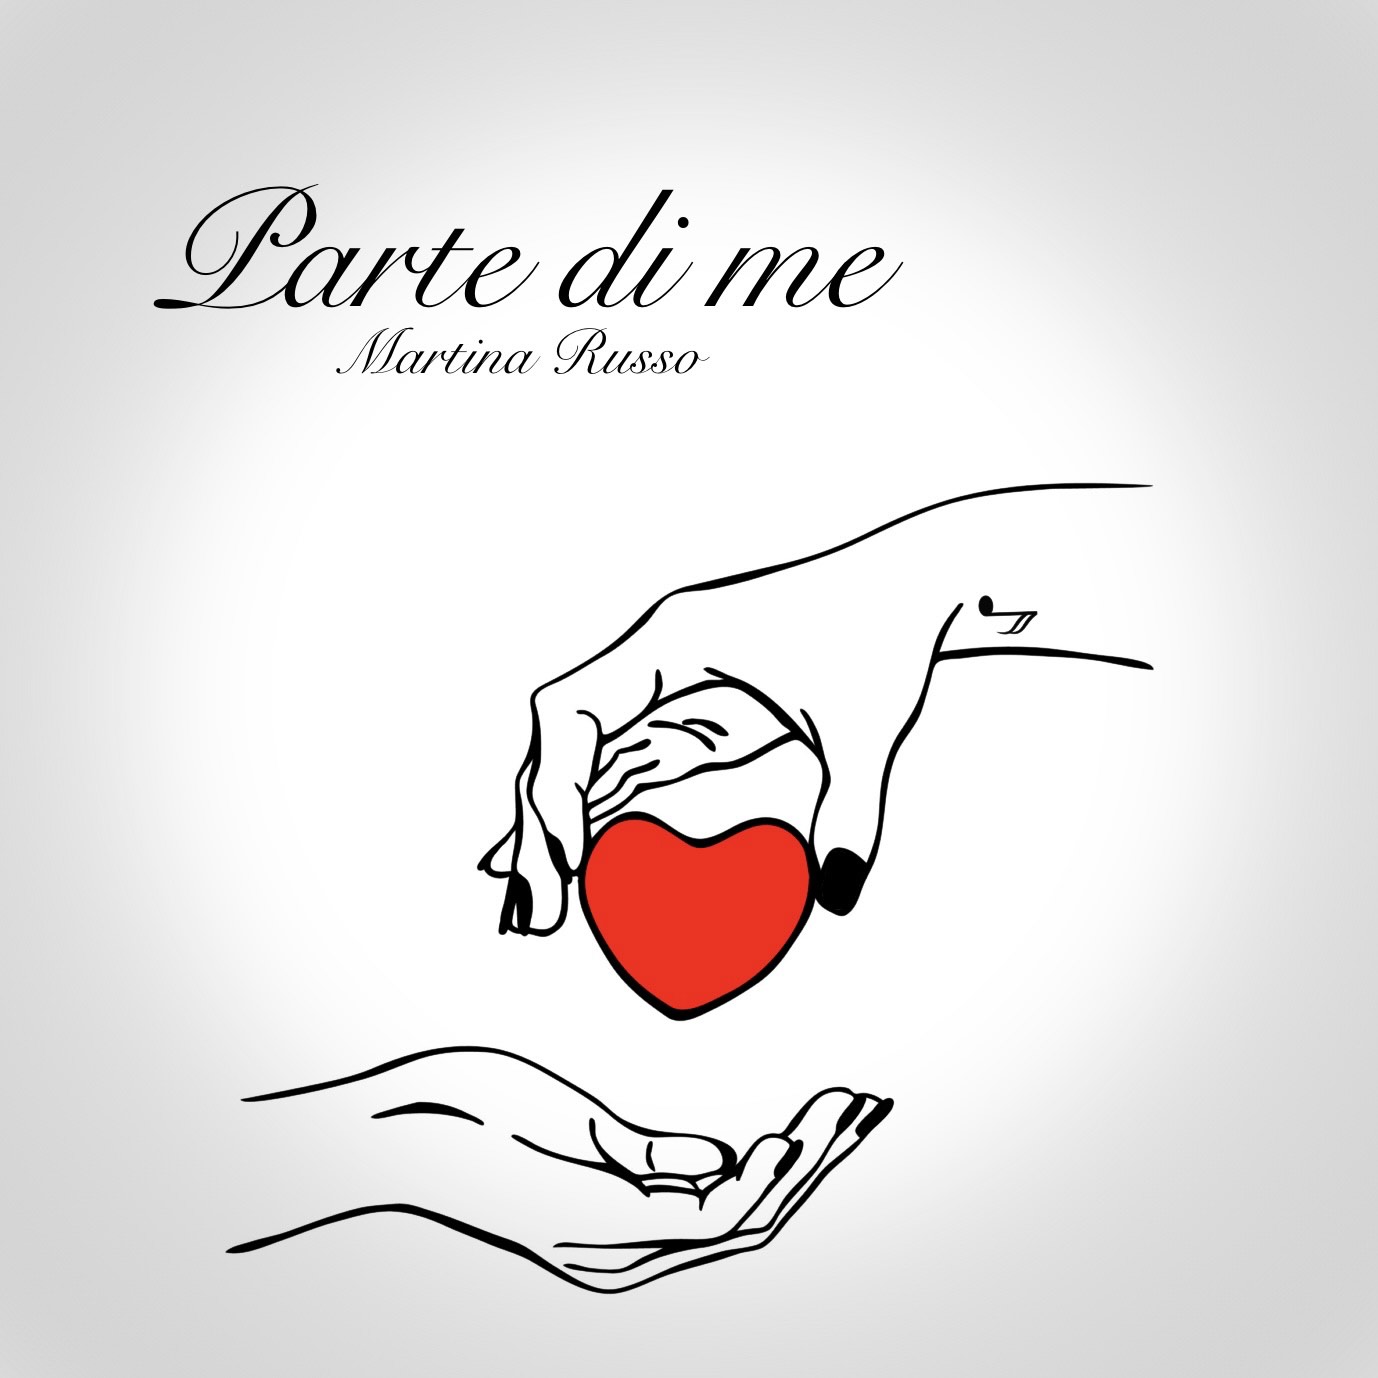 Martina Russo e il suo singolo “Parte di me”